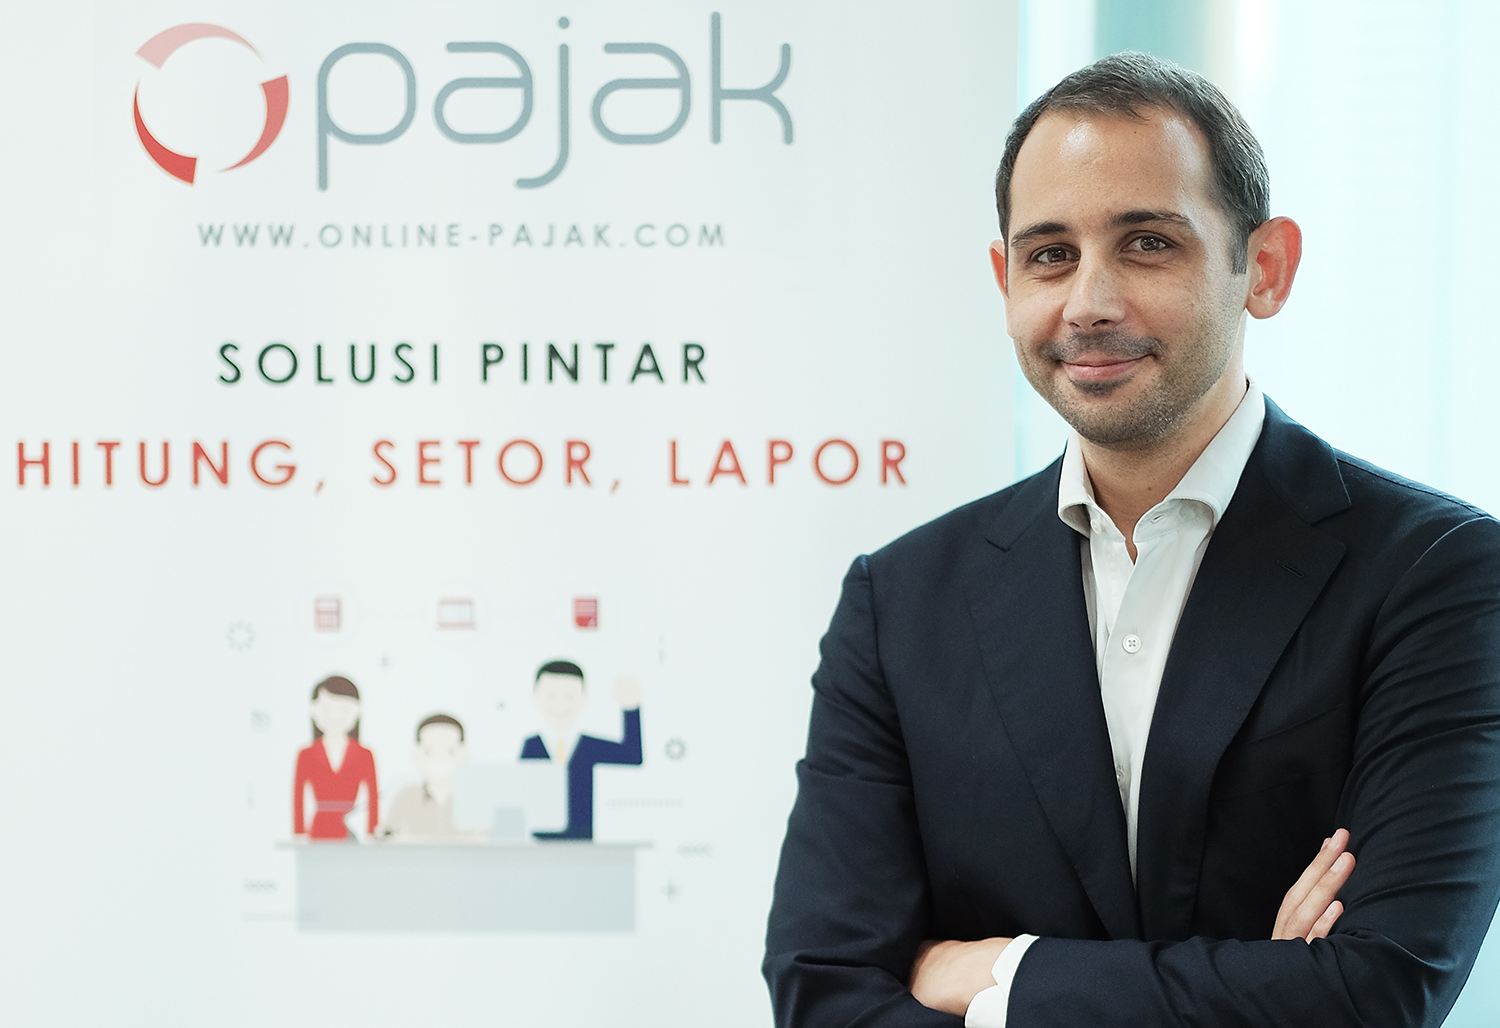 OnlinePajak raises over US$25mil in Series B funding